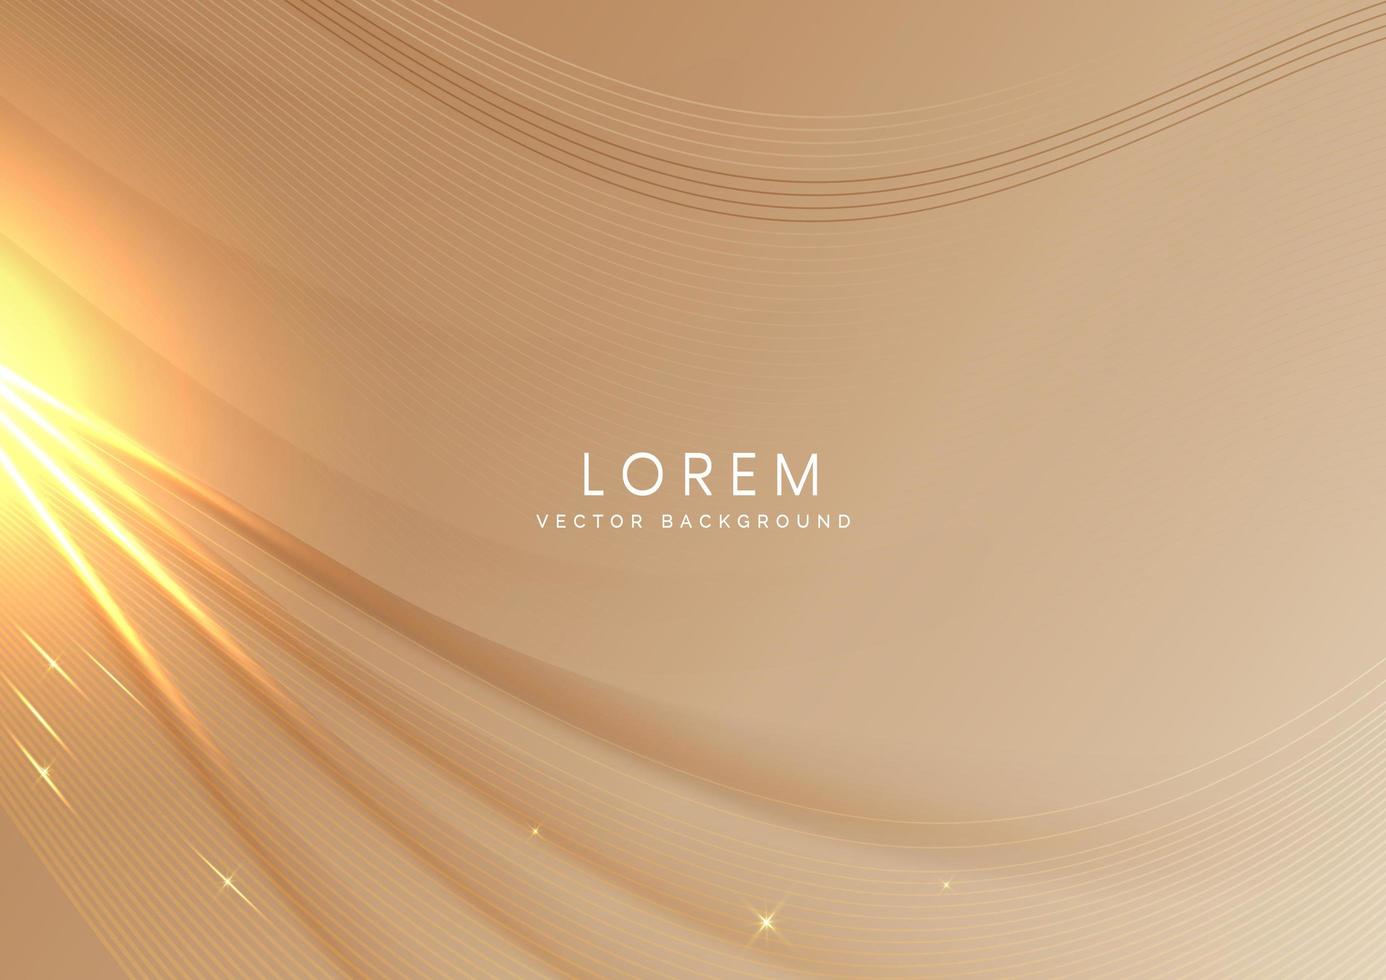 Fondo abstracto capa de onda de plantilla de banner de lujo marrón suave con ondas de líneas elegantes doradas. diseño de concepto de lujo. vector